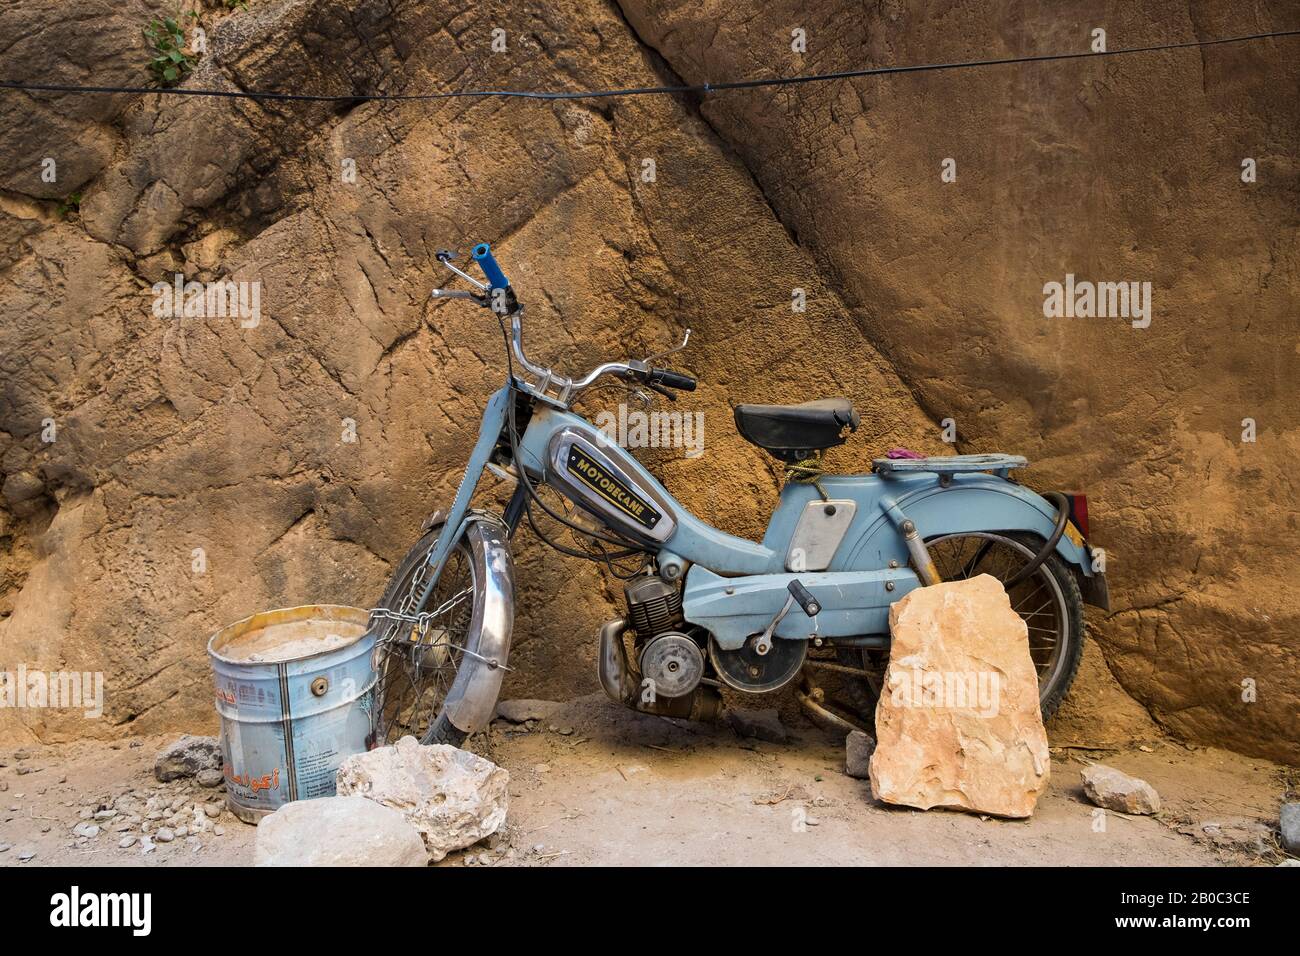 Morocco, Todra gorges, motobecane Stock Photo